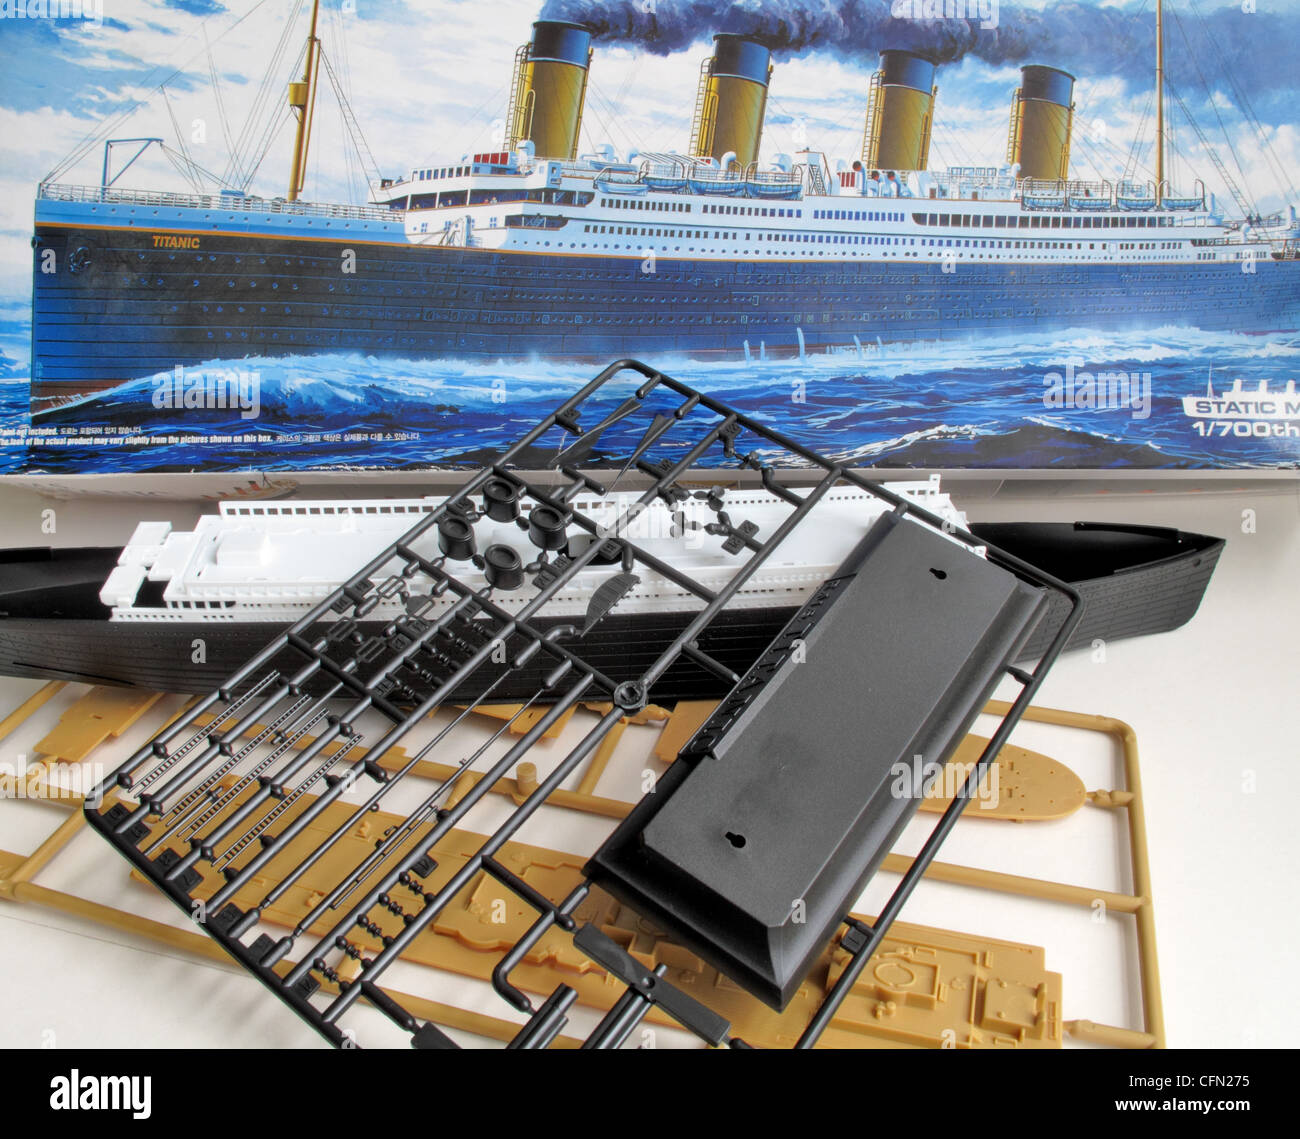 Un kit de pièces démontées et le modèle du Titanic le navire. Banque D'Images